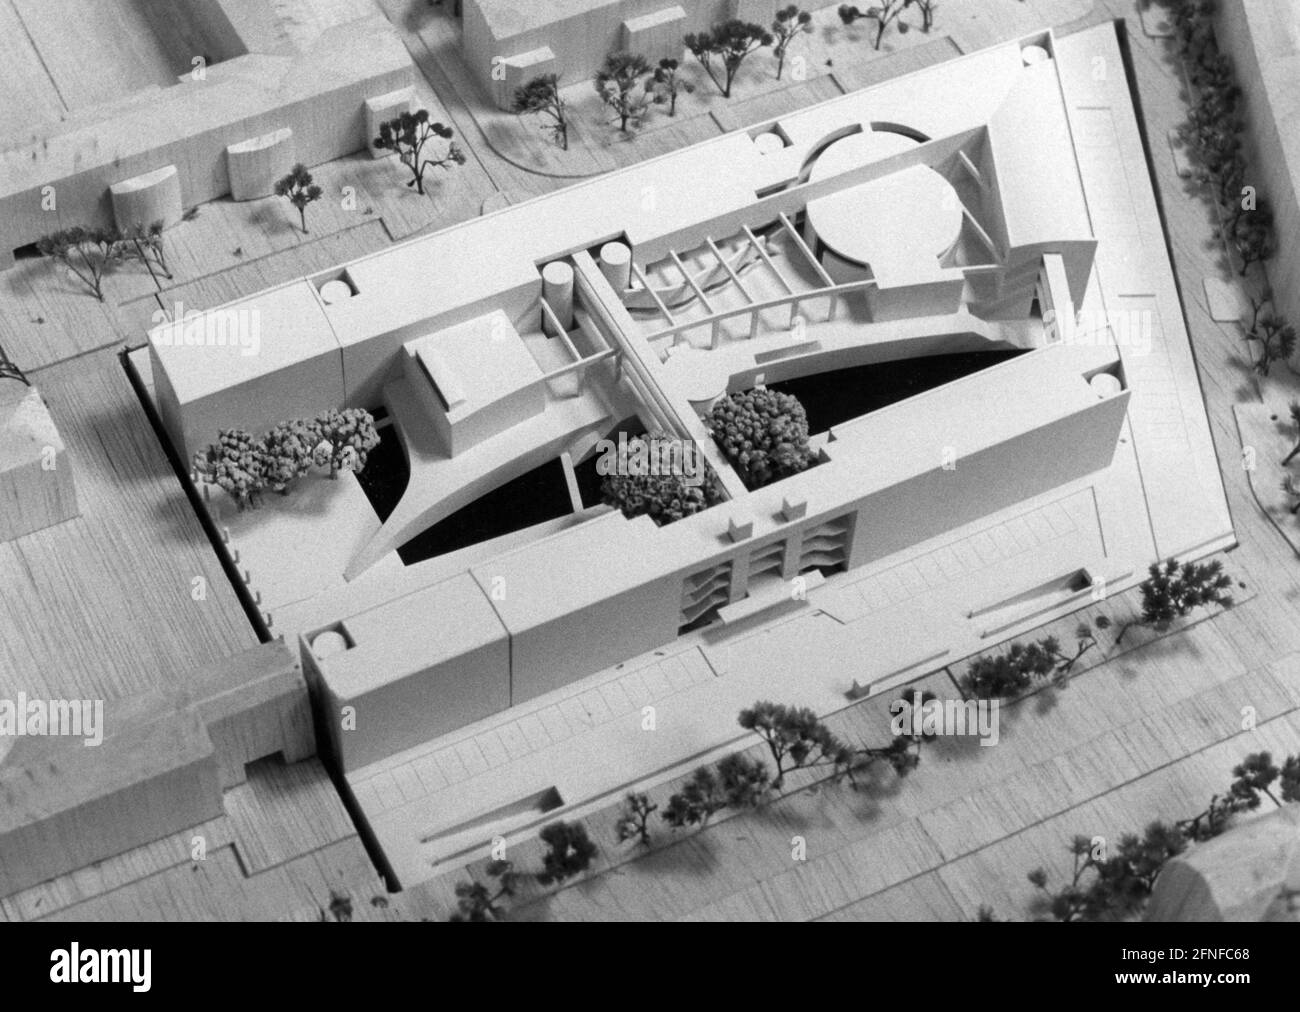 Le modèle du nouvel Institut Goethe est présenté à Munich. En particulier, les conceptions de toit sont examinées. [traduction automatique] Banque D'Images